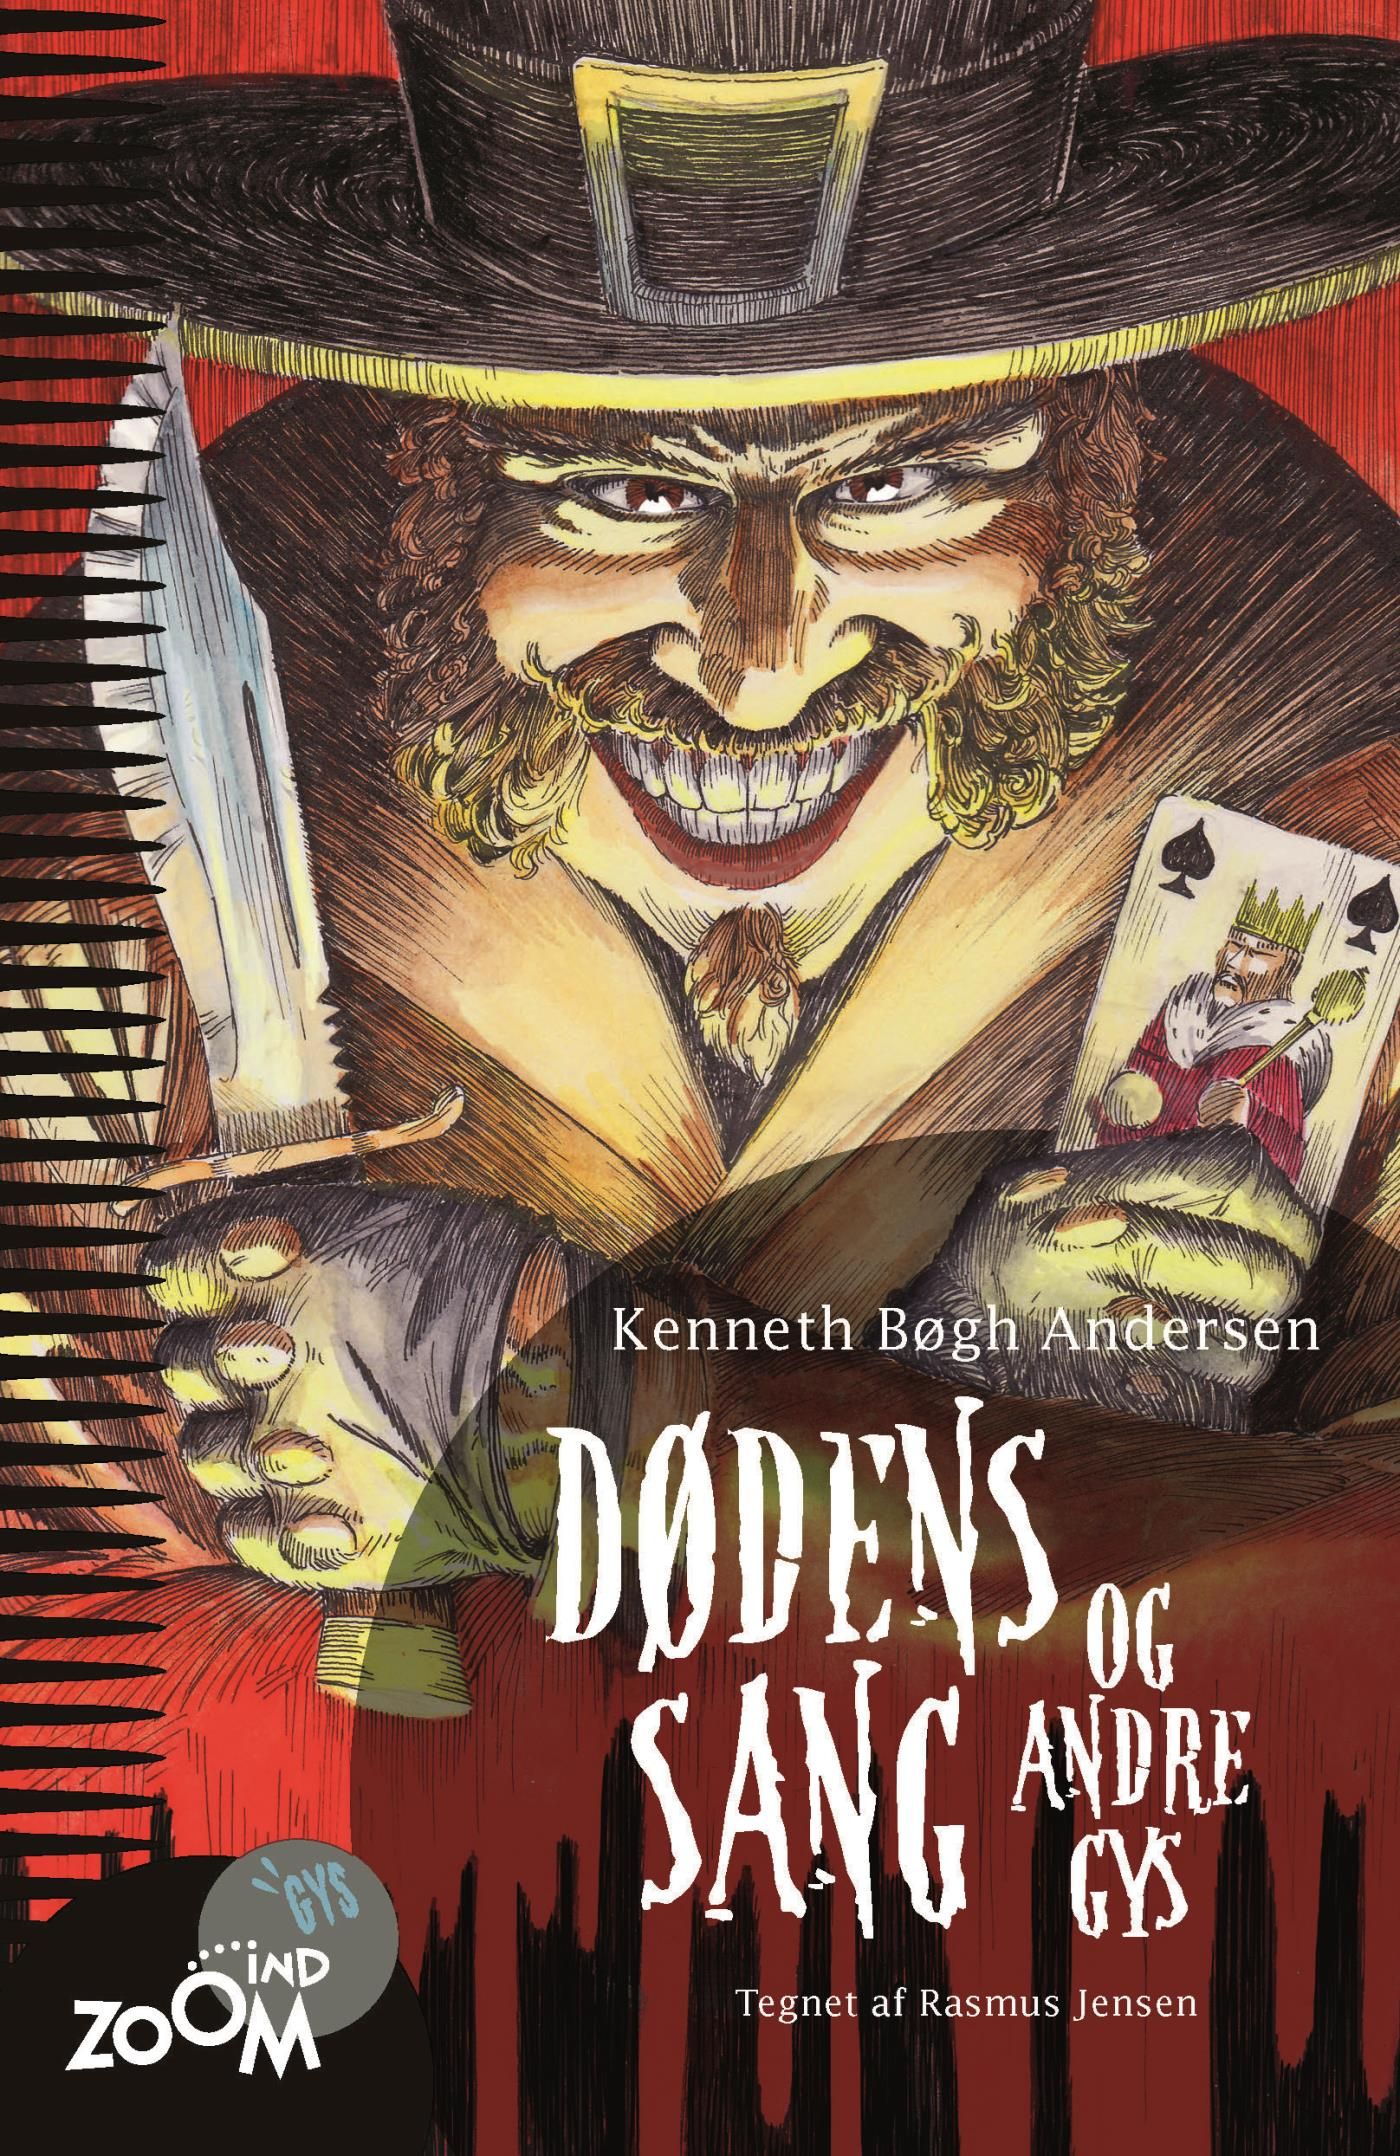 Dødens sang - og andre gys, e-bok av Kenneth Bøgh Andersen